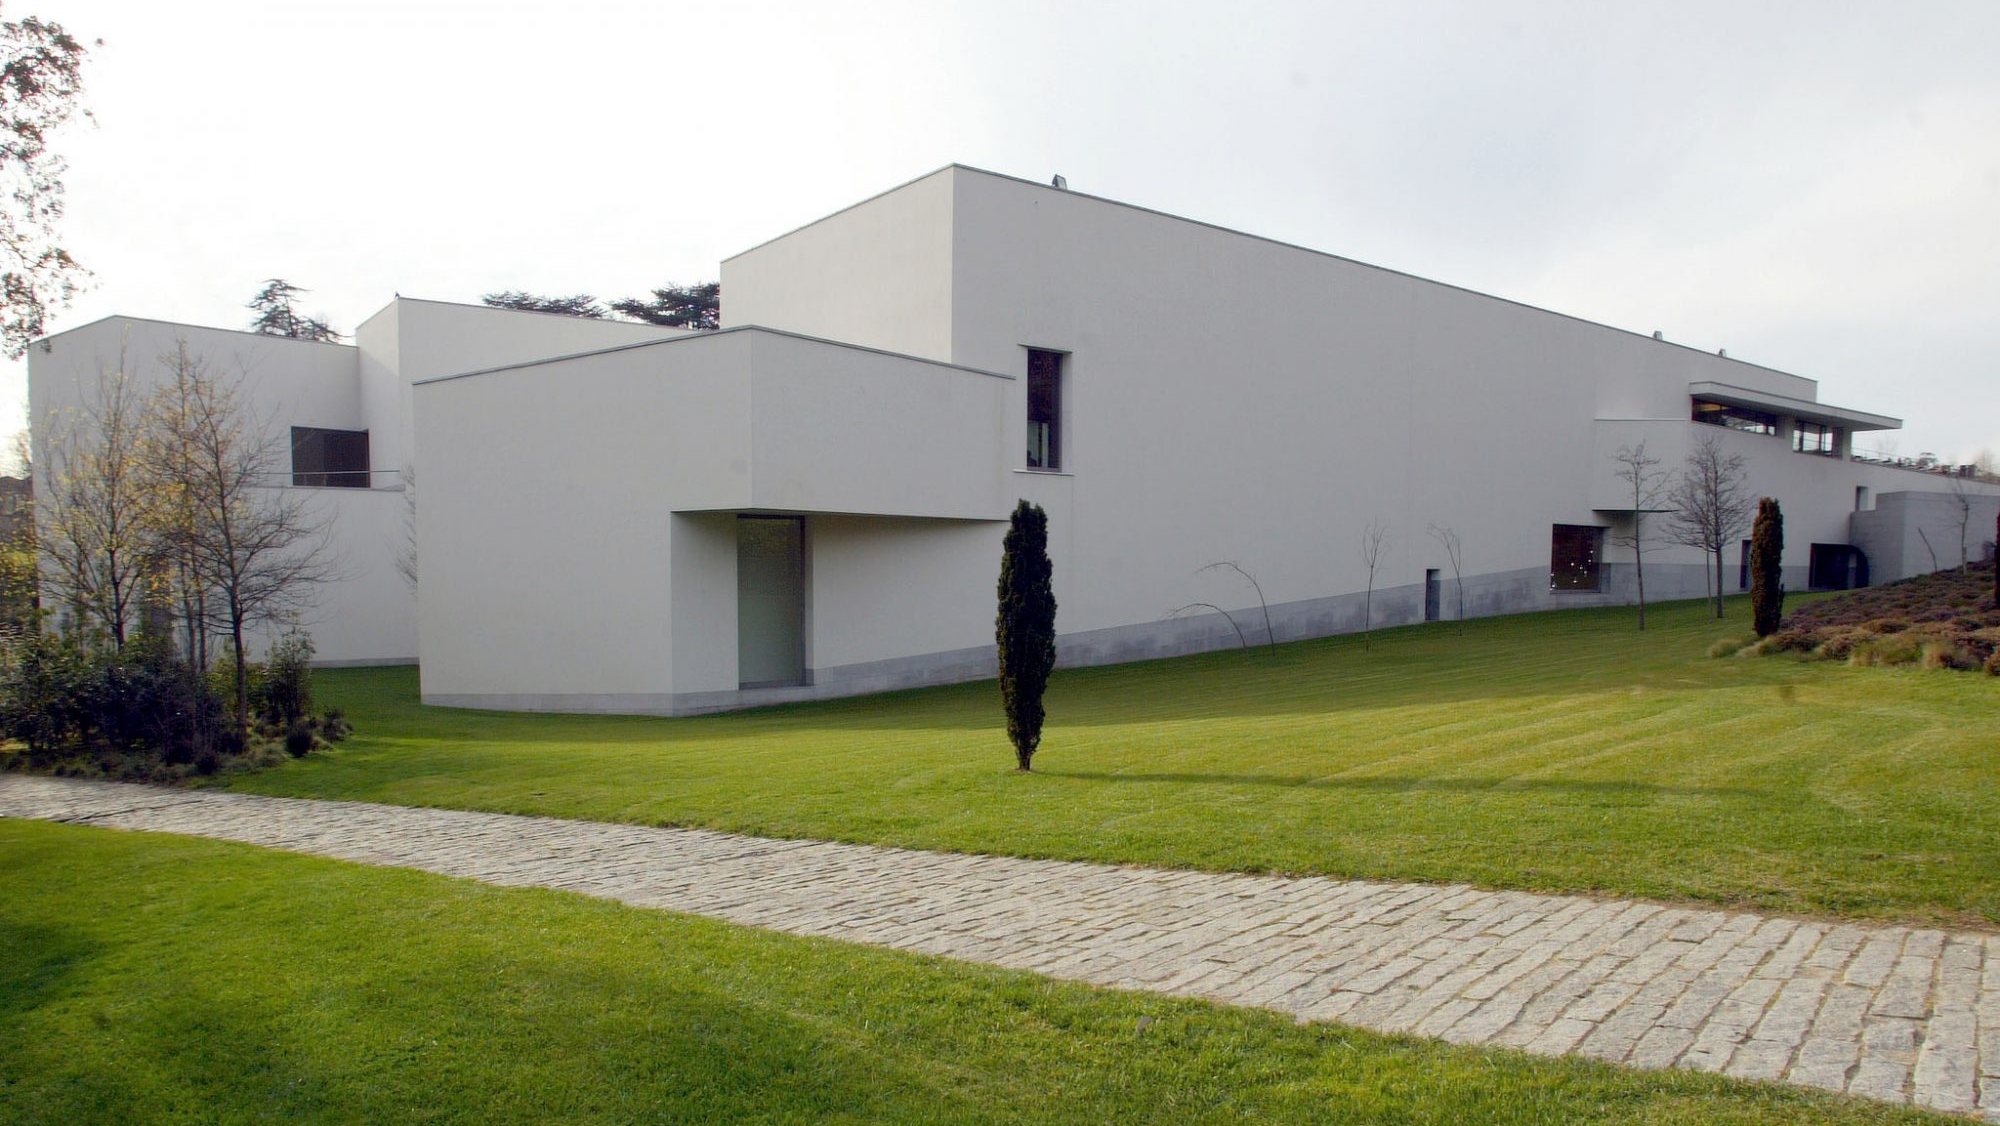 O Museu de Serralves foi um projeto assinado pelo arquiteto Álvaro Siza Vieira, que volta a trabalhar para a ampliação do espaço